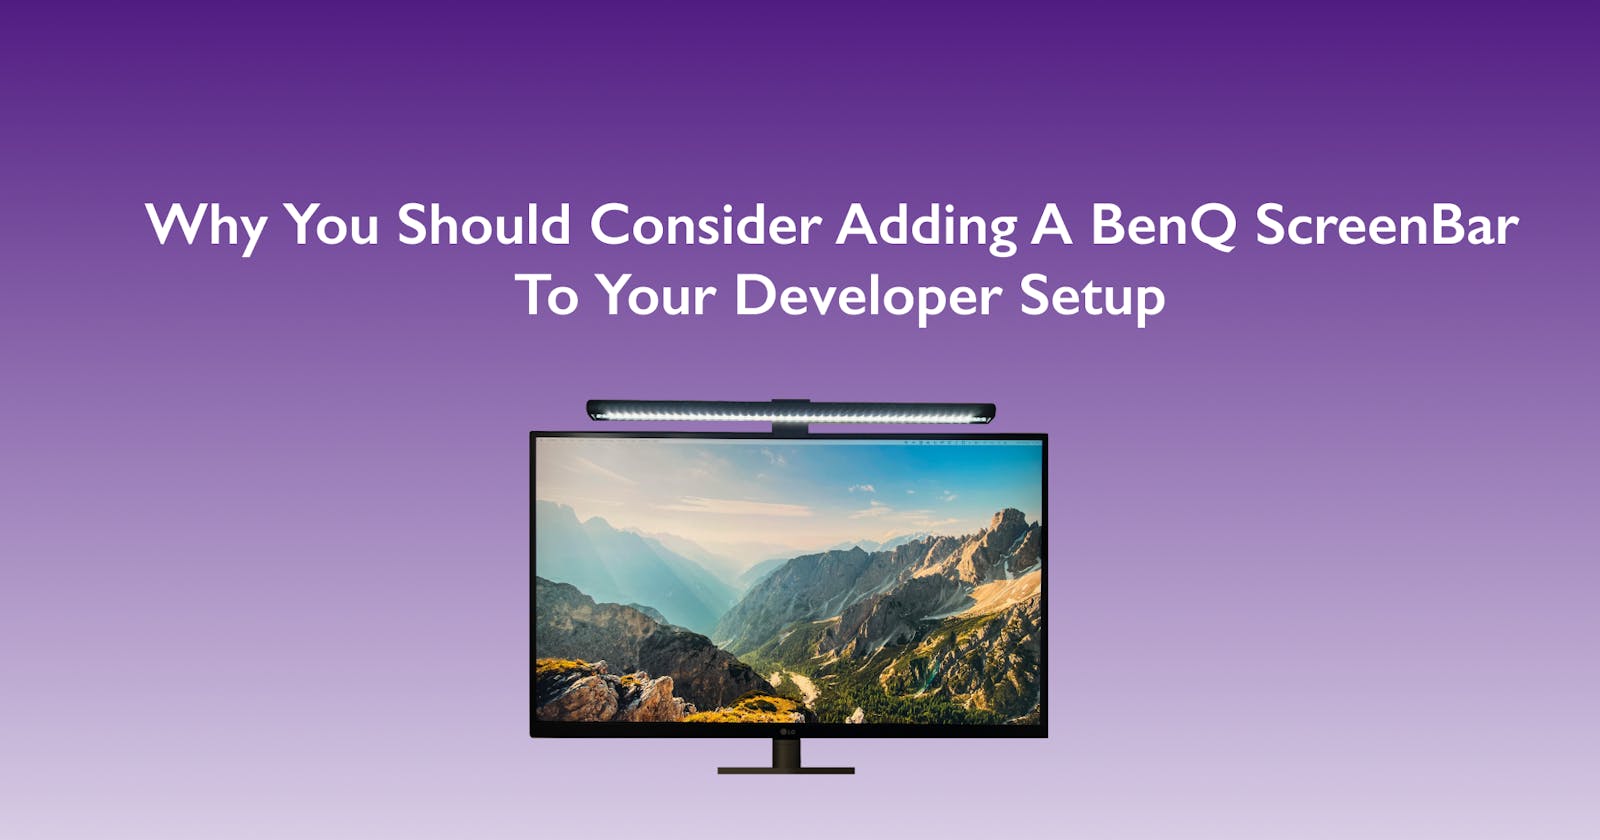 Why you should consider adding a BenQ ScreenBar to your developer setup